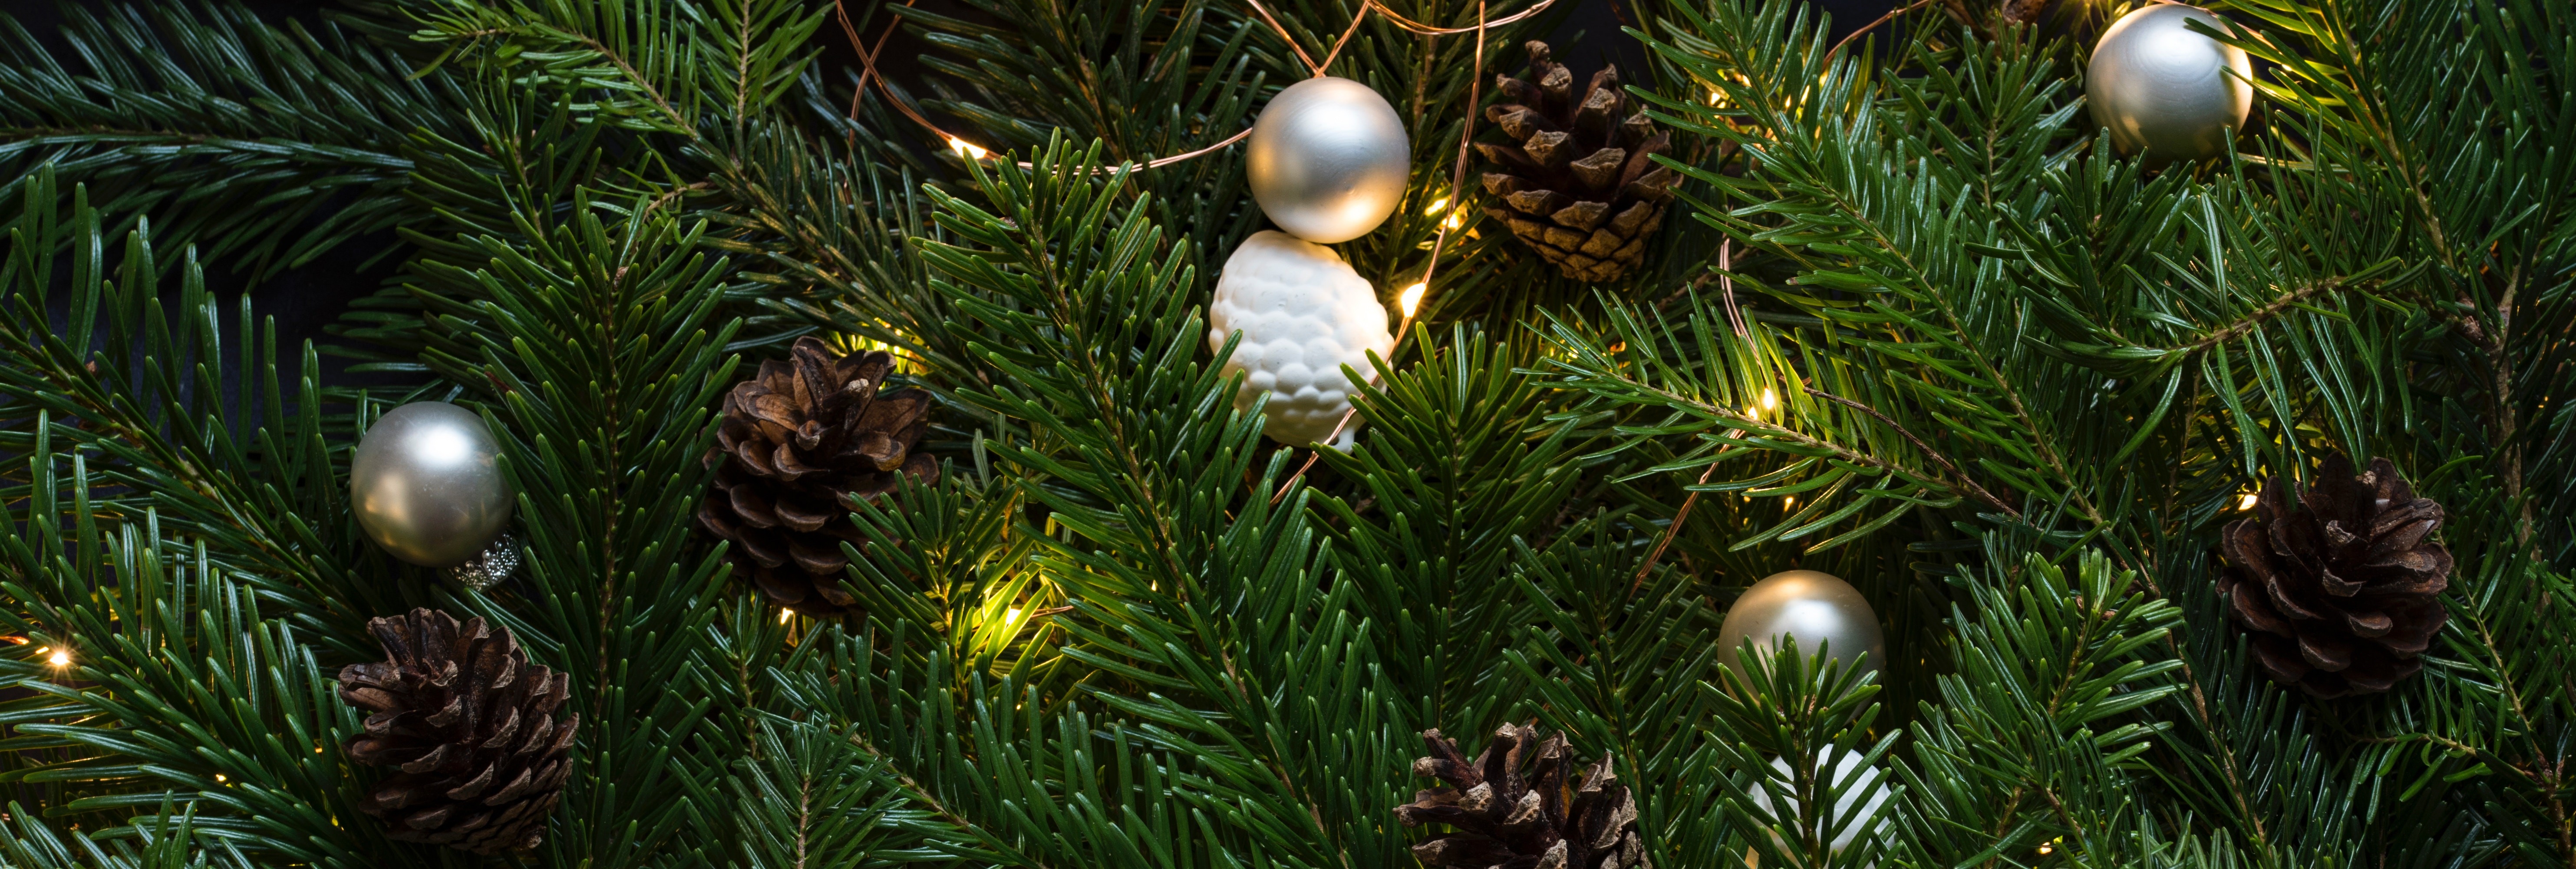 Verniel toewijzing transmissie 5 tips voor een duurzame kerstboom — Milieudefensie